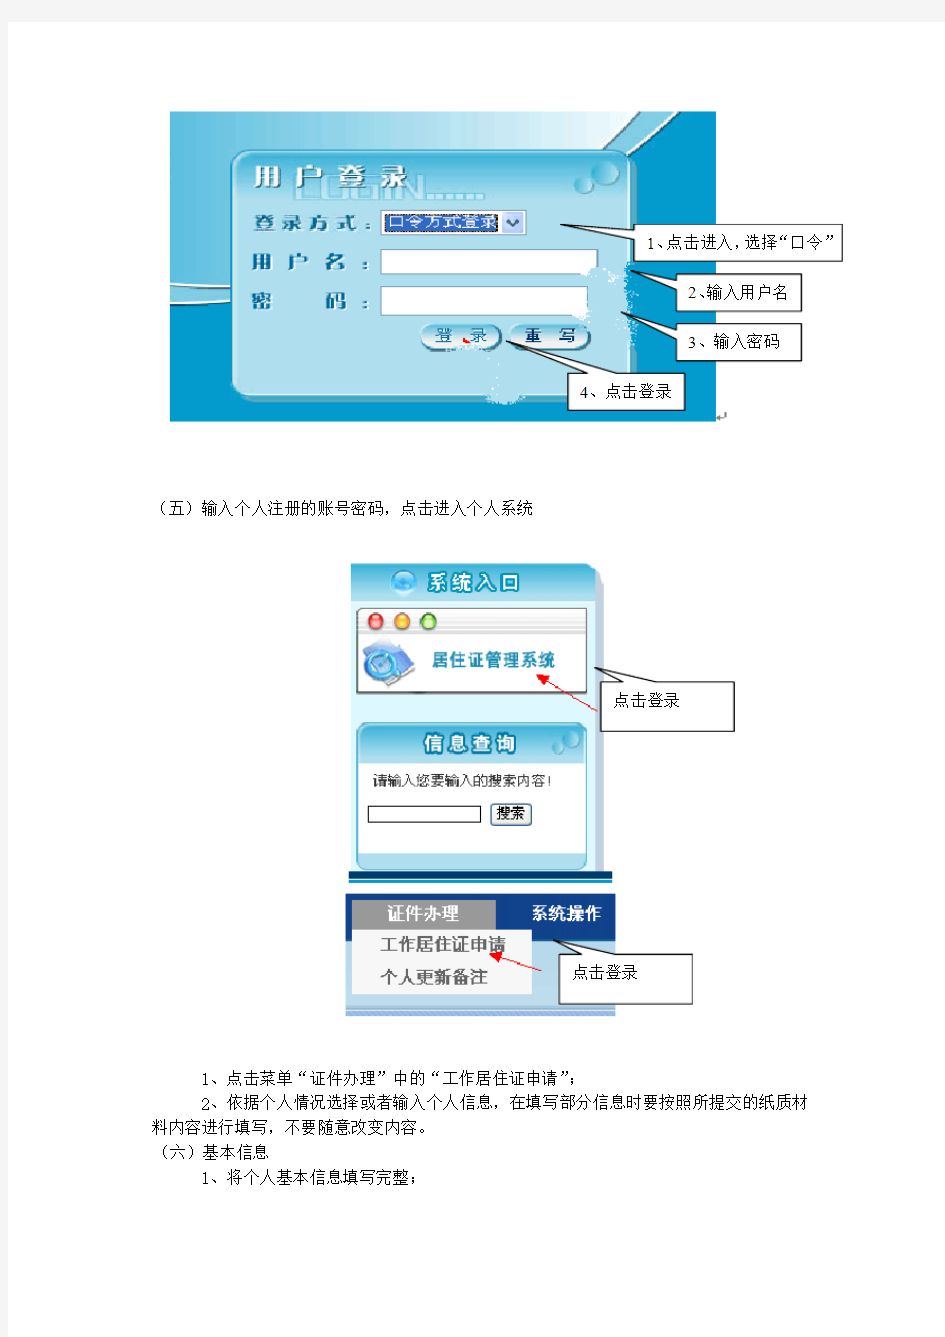 北京工作居住证-个人申报系统指南